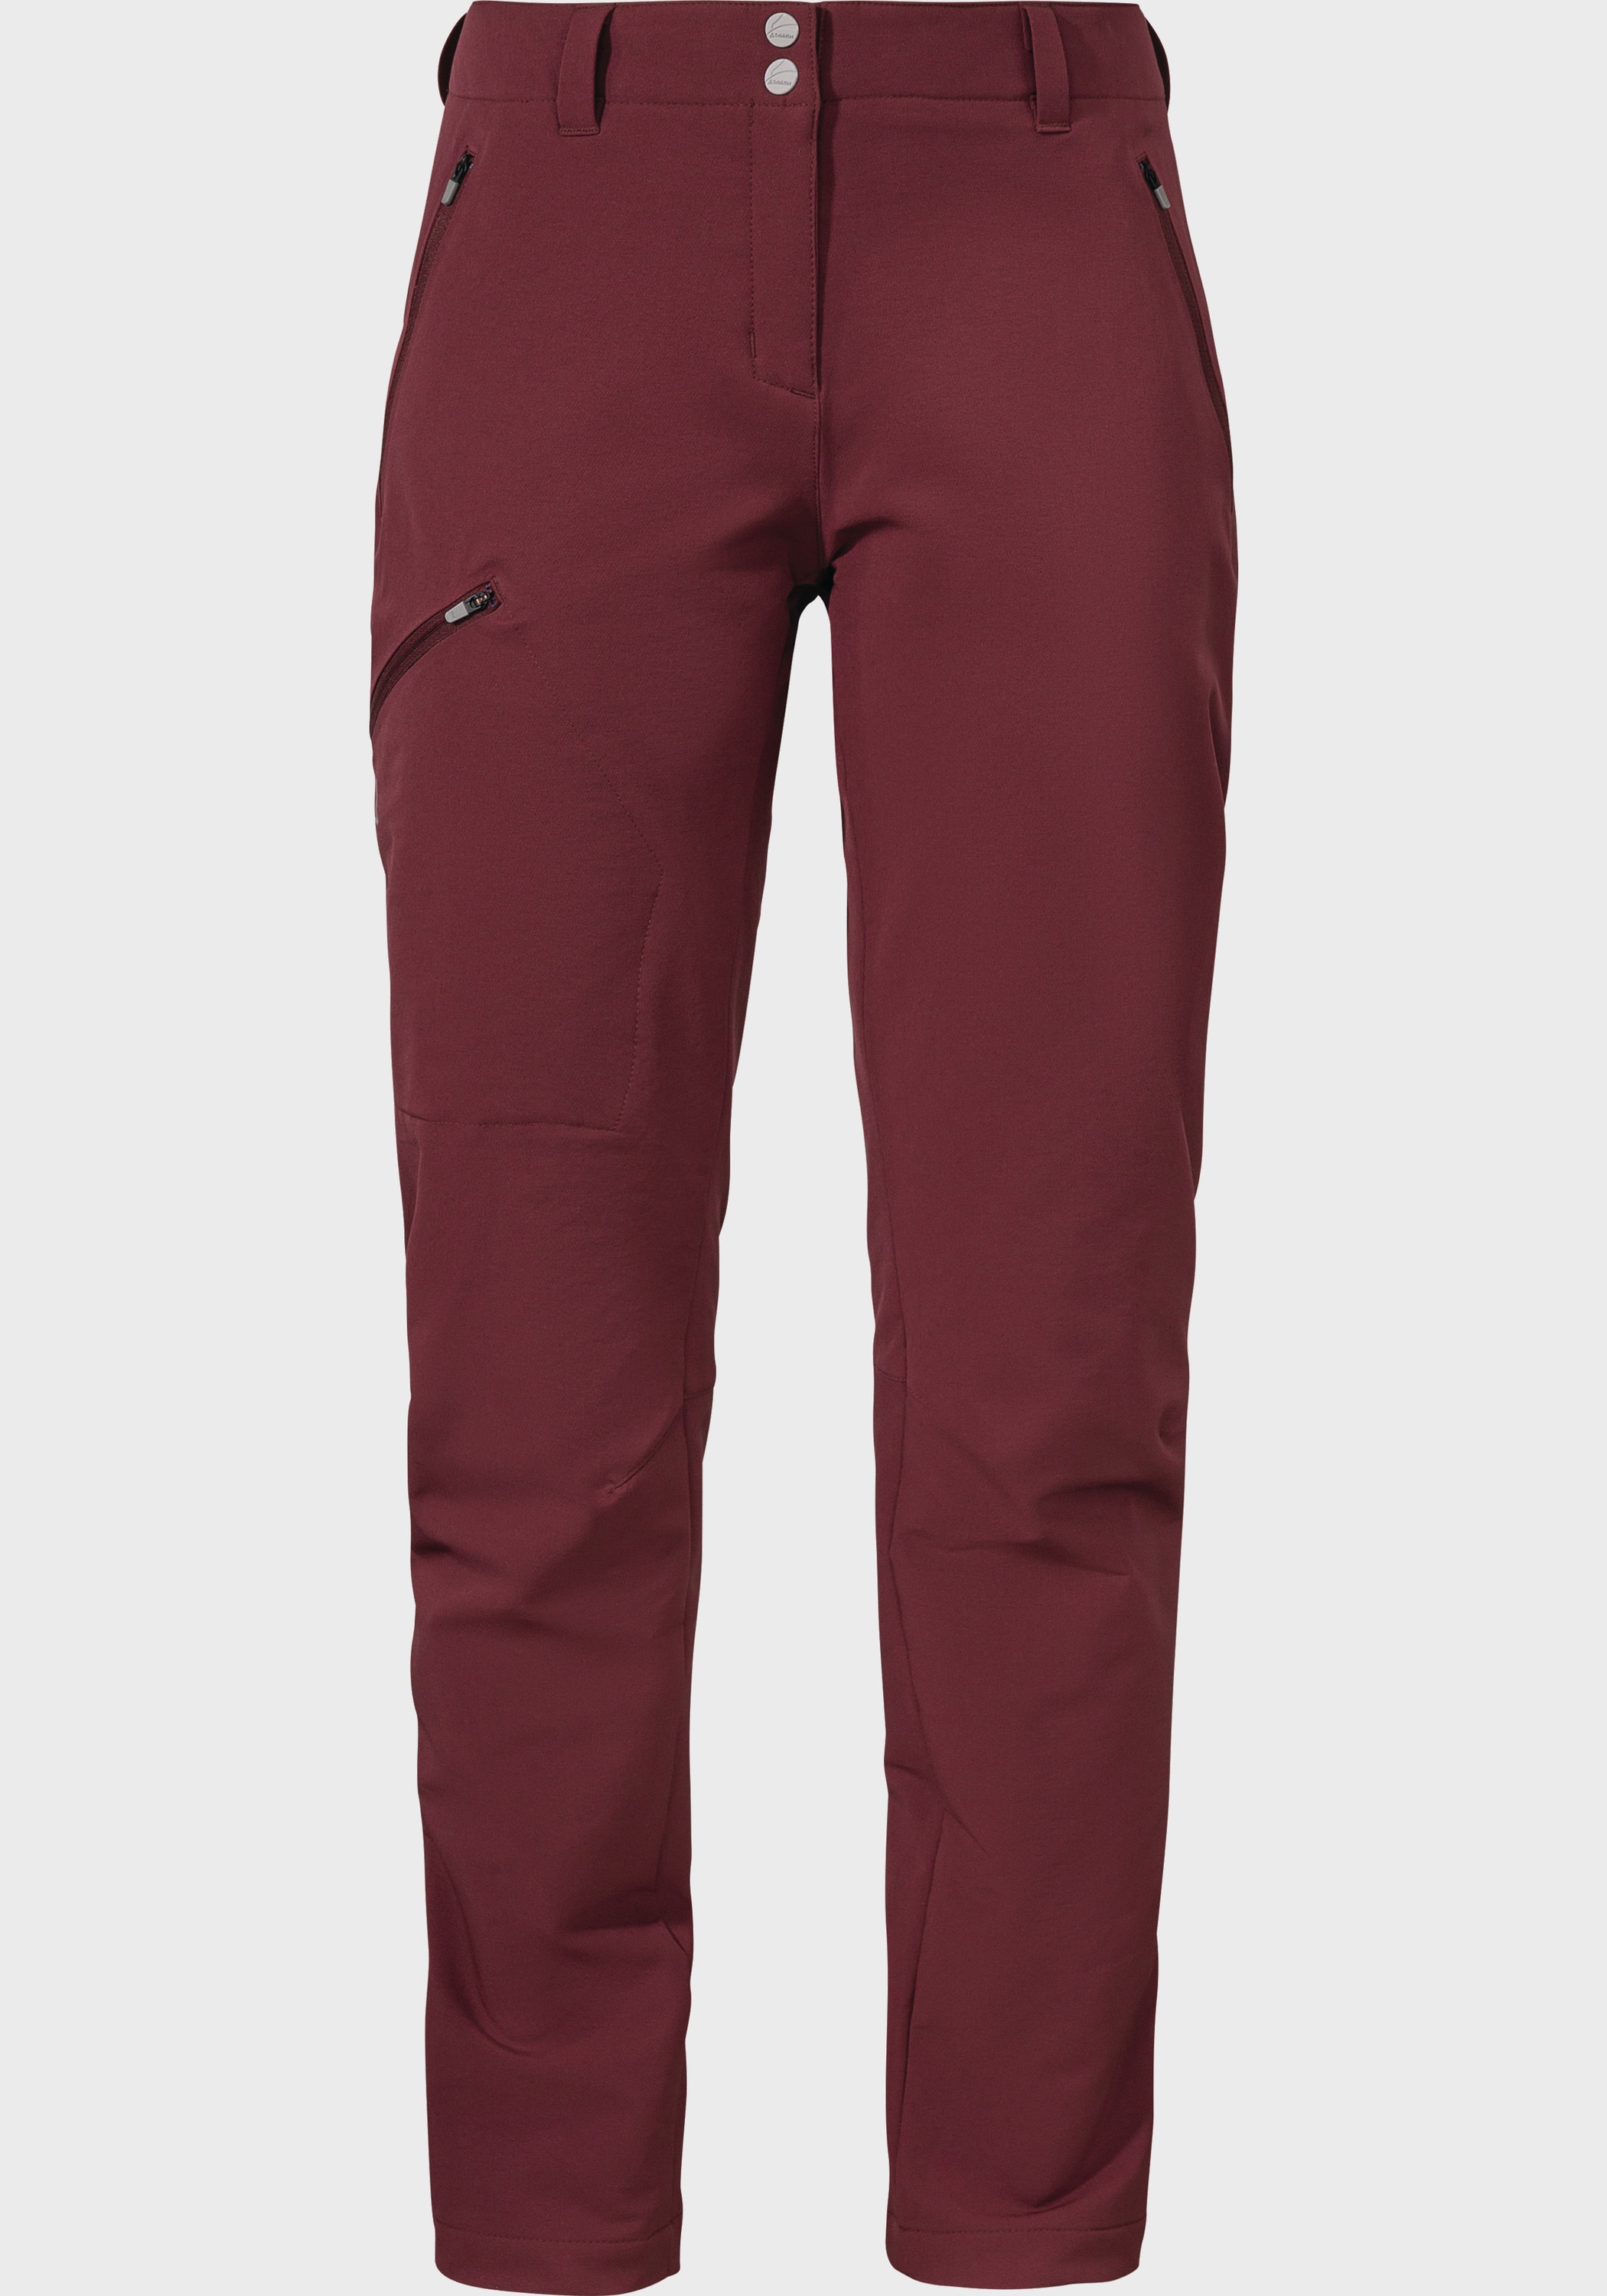 Schöffel Outdoorhose »Pants Ascona Warm L« online kaufen